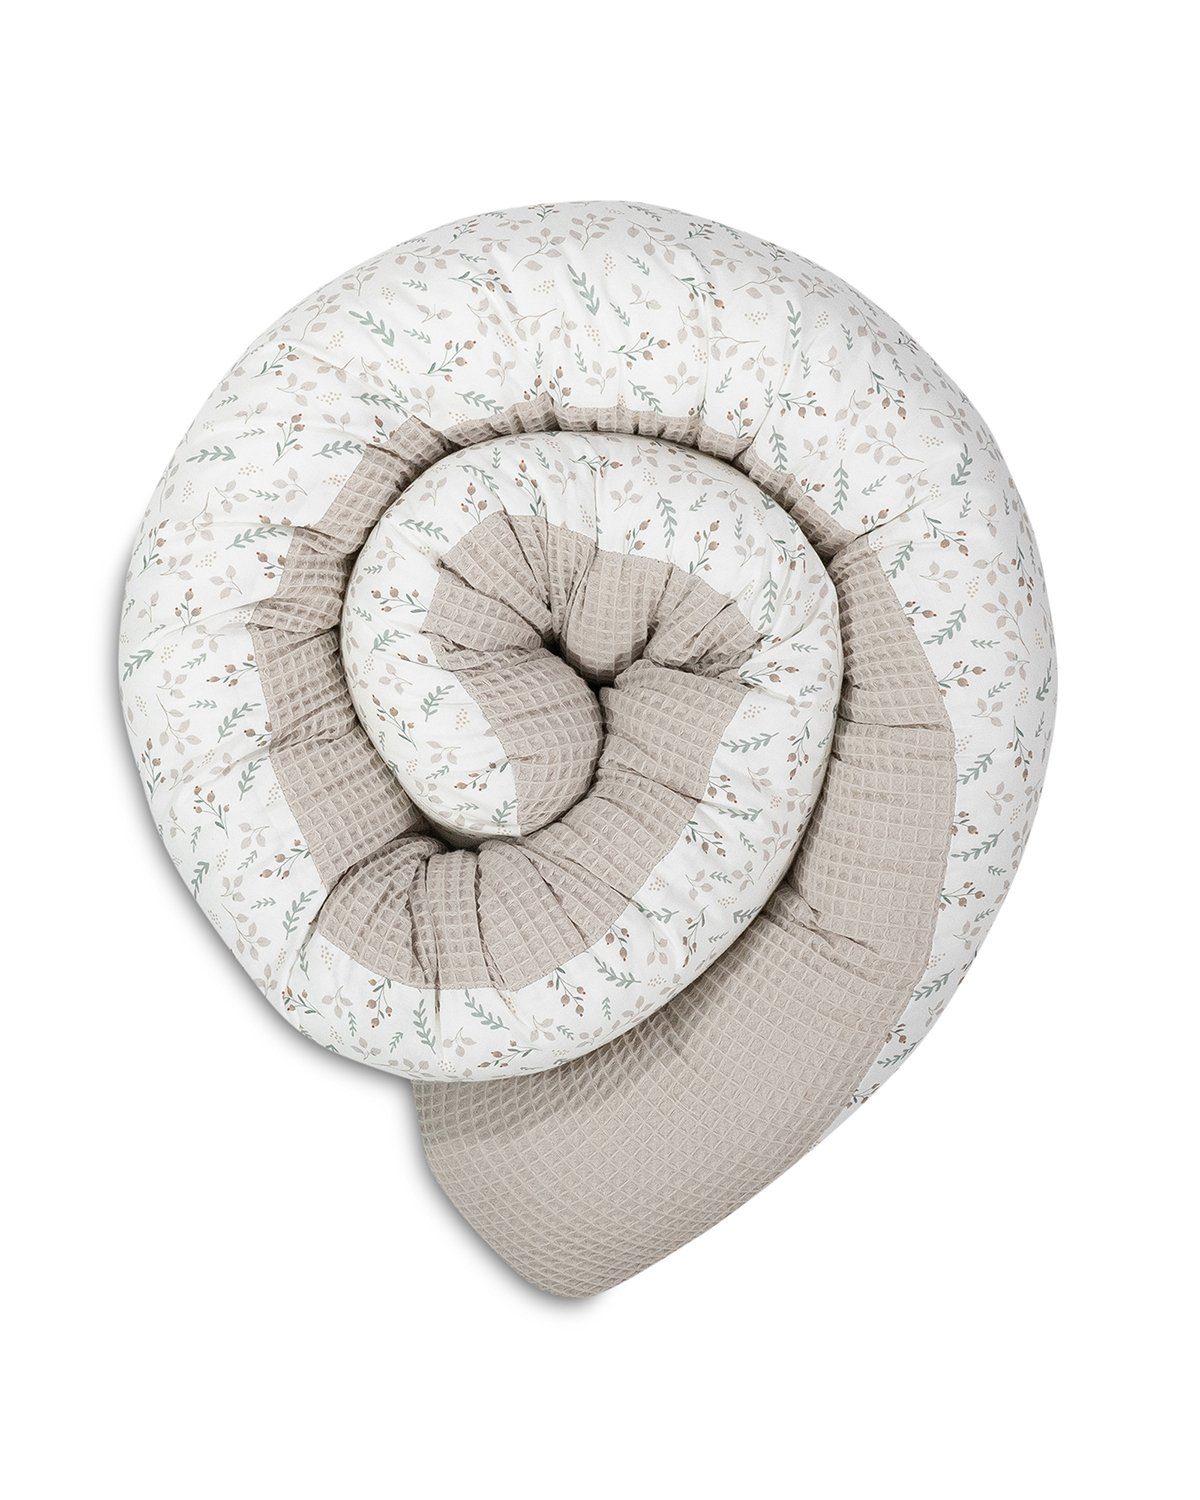 ULLENBOOM ® Nestchenschlange Bettschlange Baby 200cm, Ideal als Bettumrandung Floral Sand, Bezug aus 100% Baumwolle (Made in EU), Weiche Polsterung